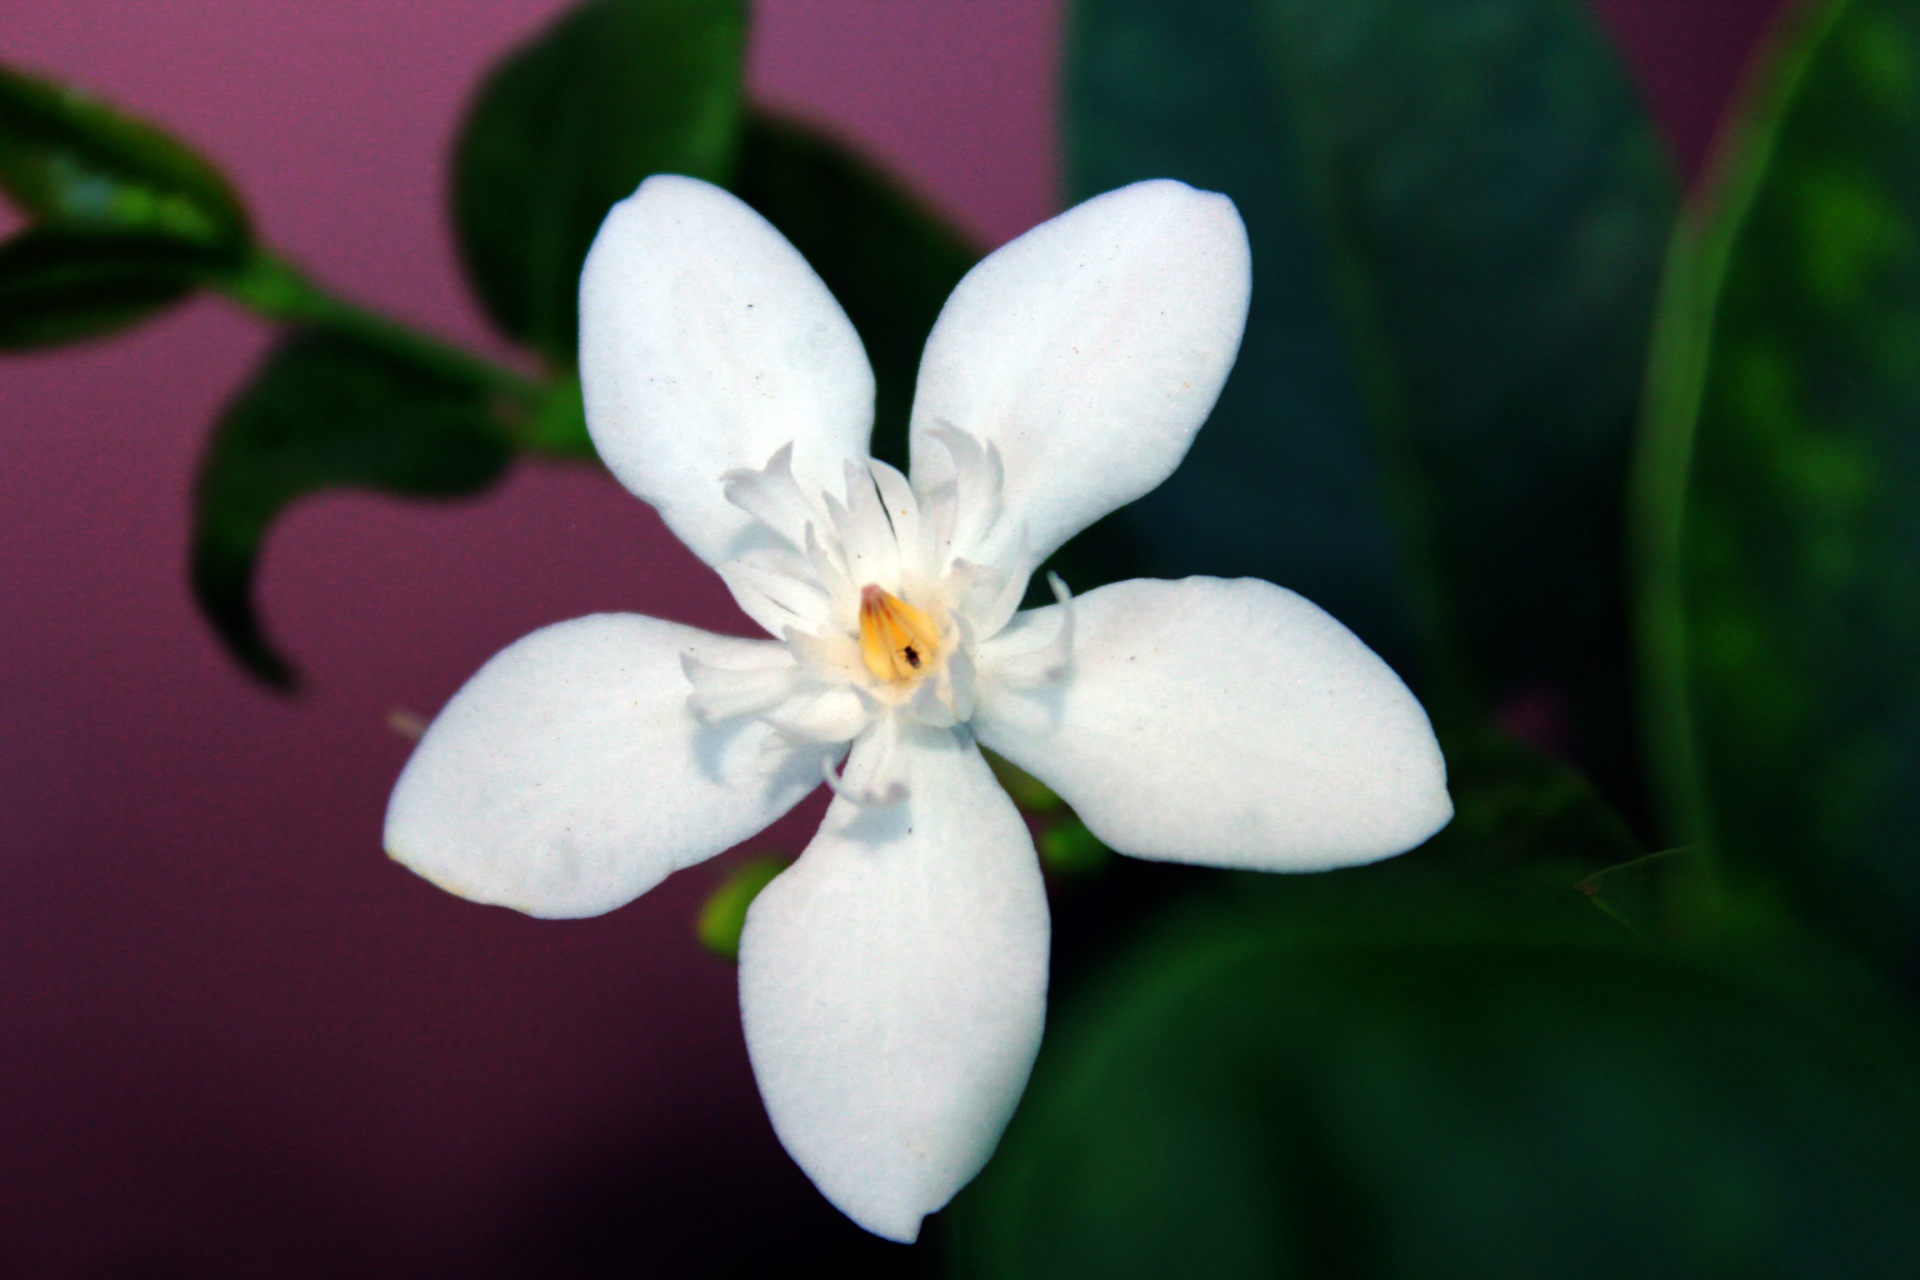 5 Petal White Flower Names